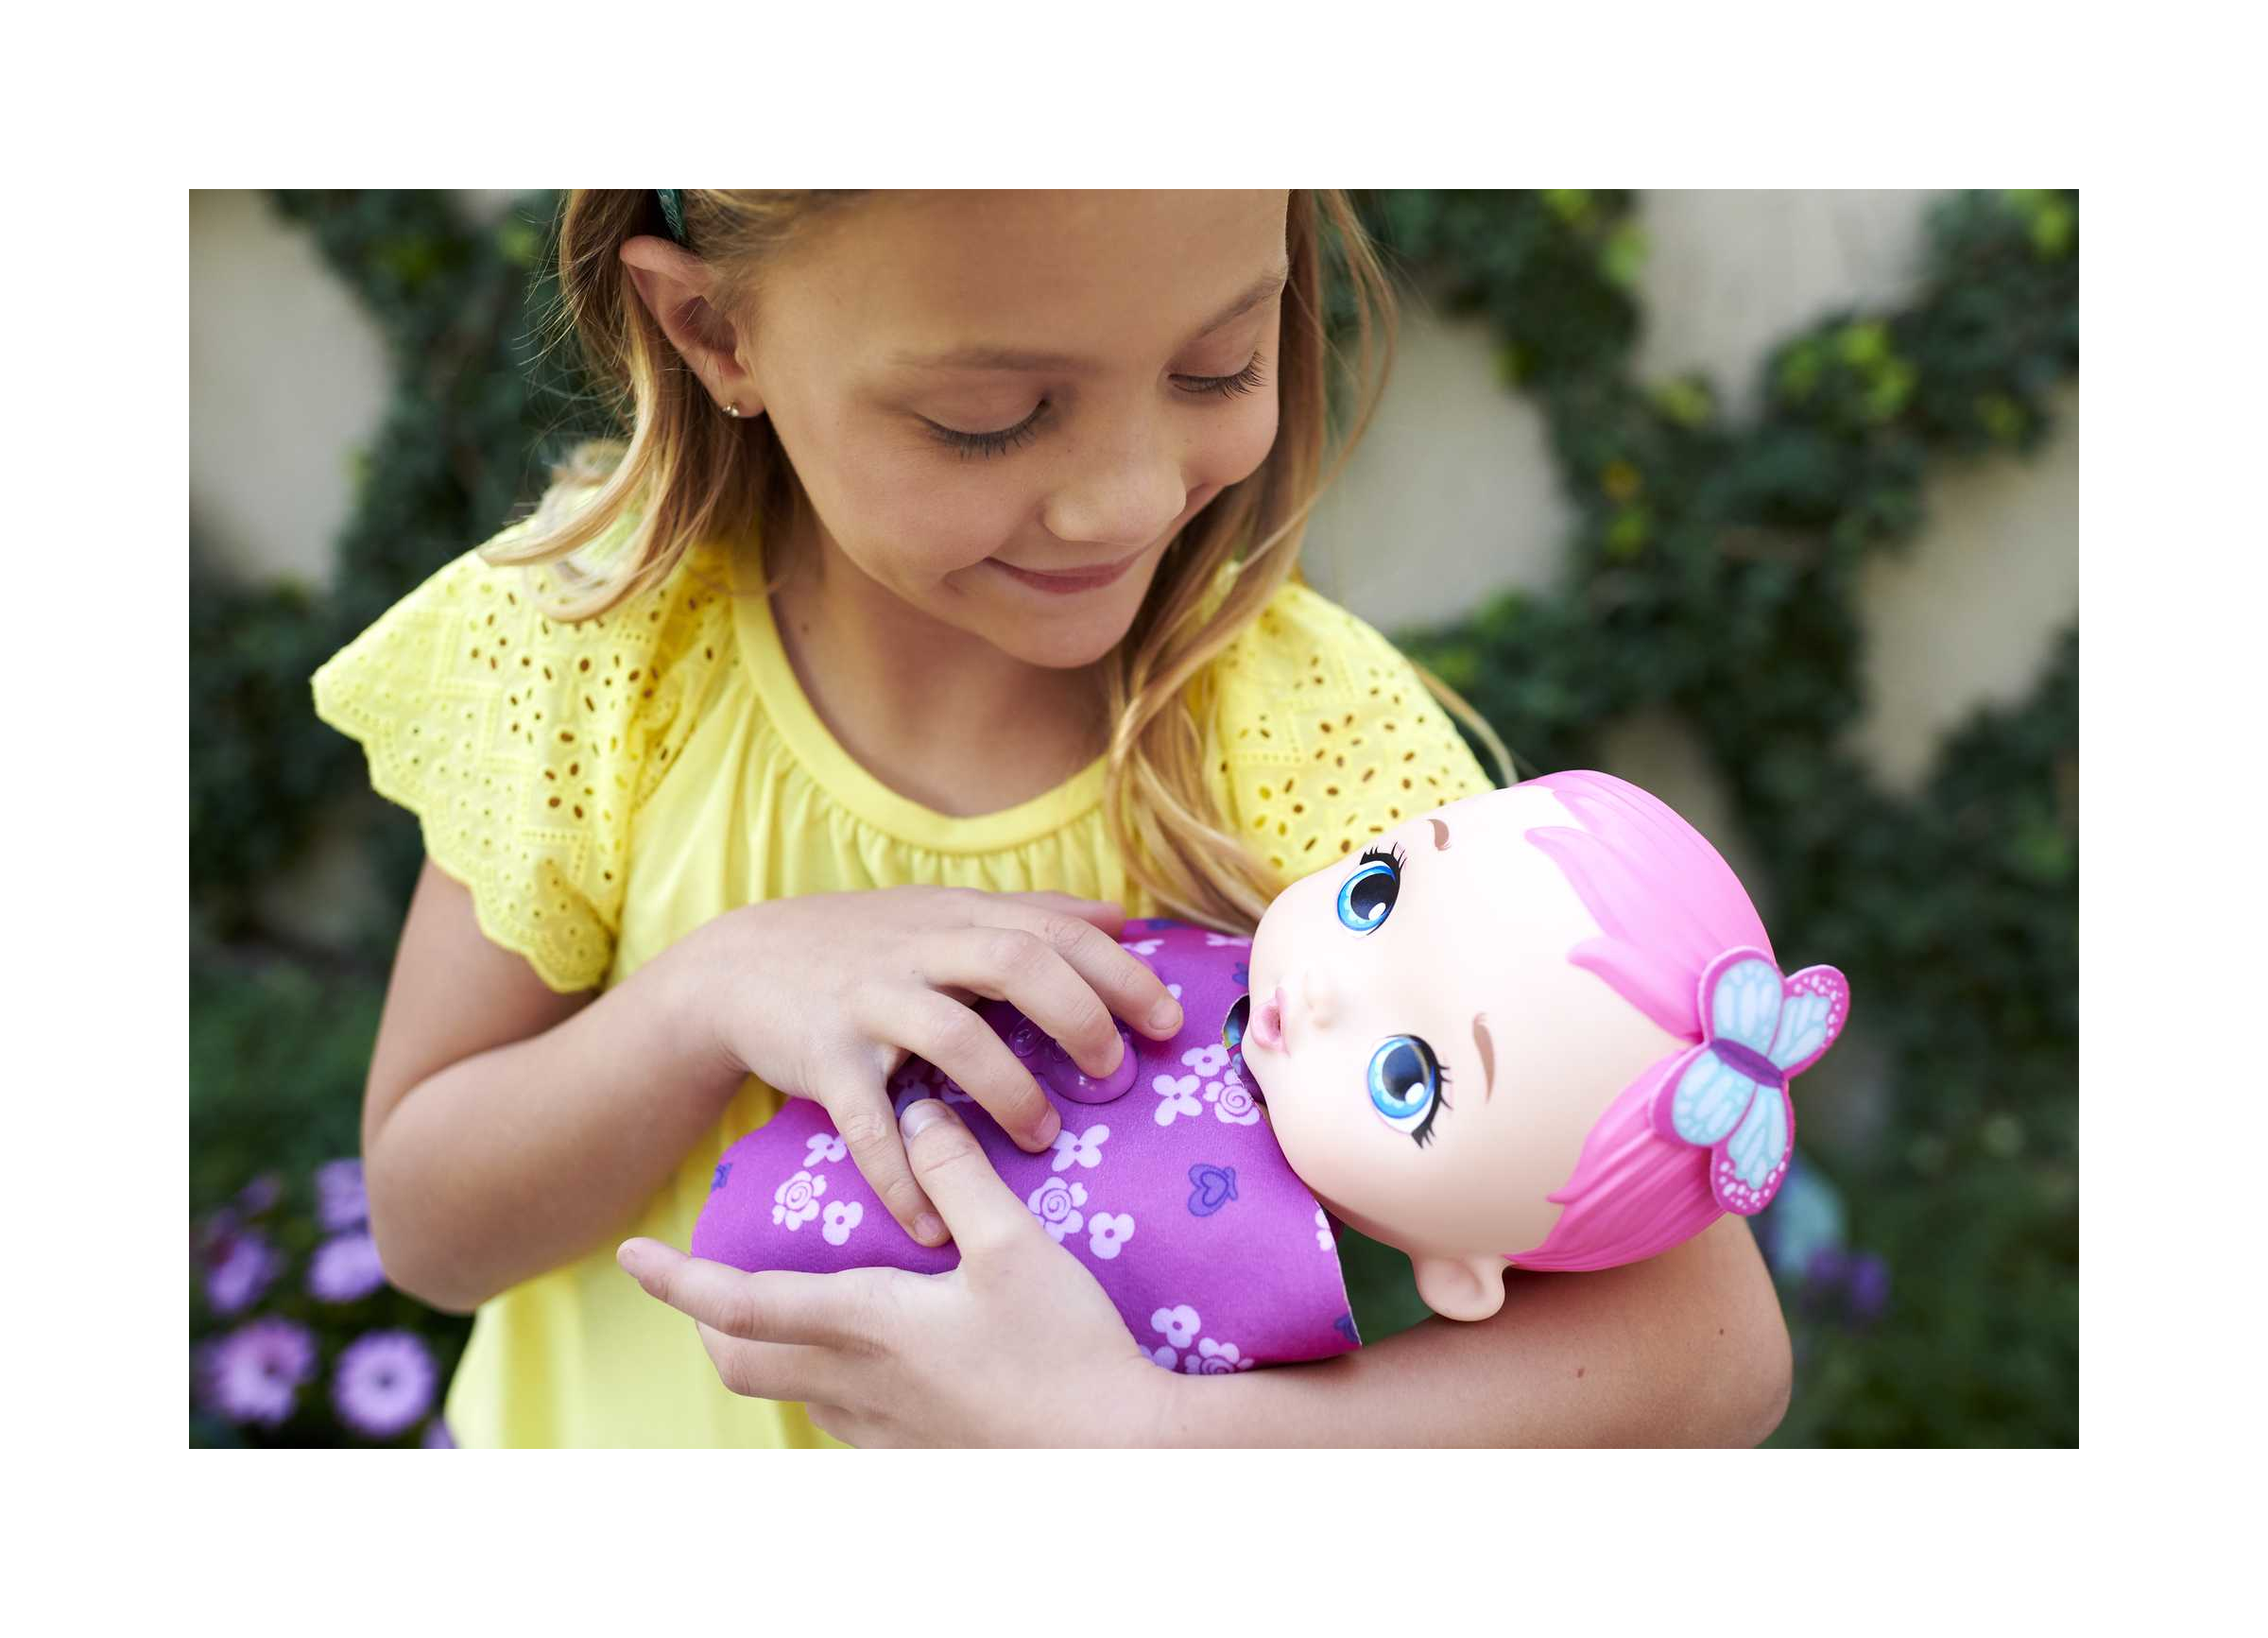 My garden baby, bambola junior farfalla rosa (30 cm) con pannolino riutilizzabile, vestiti e ali rimovibili; giocattolo per bambini 2+ anni, gyp10 - MY GARDEN BABY